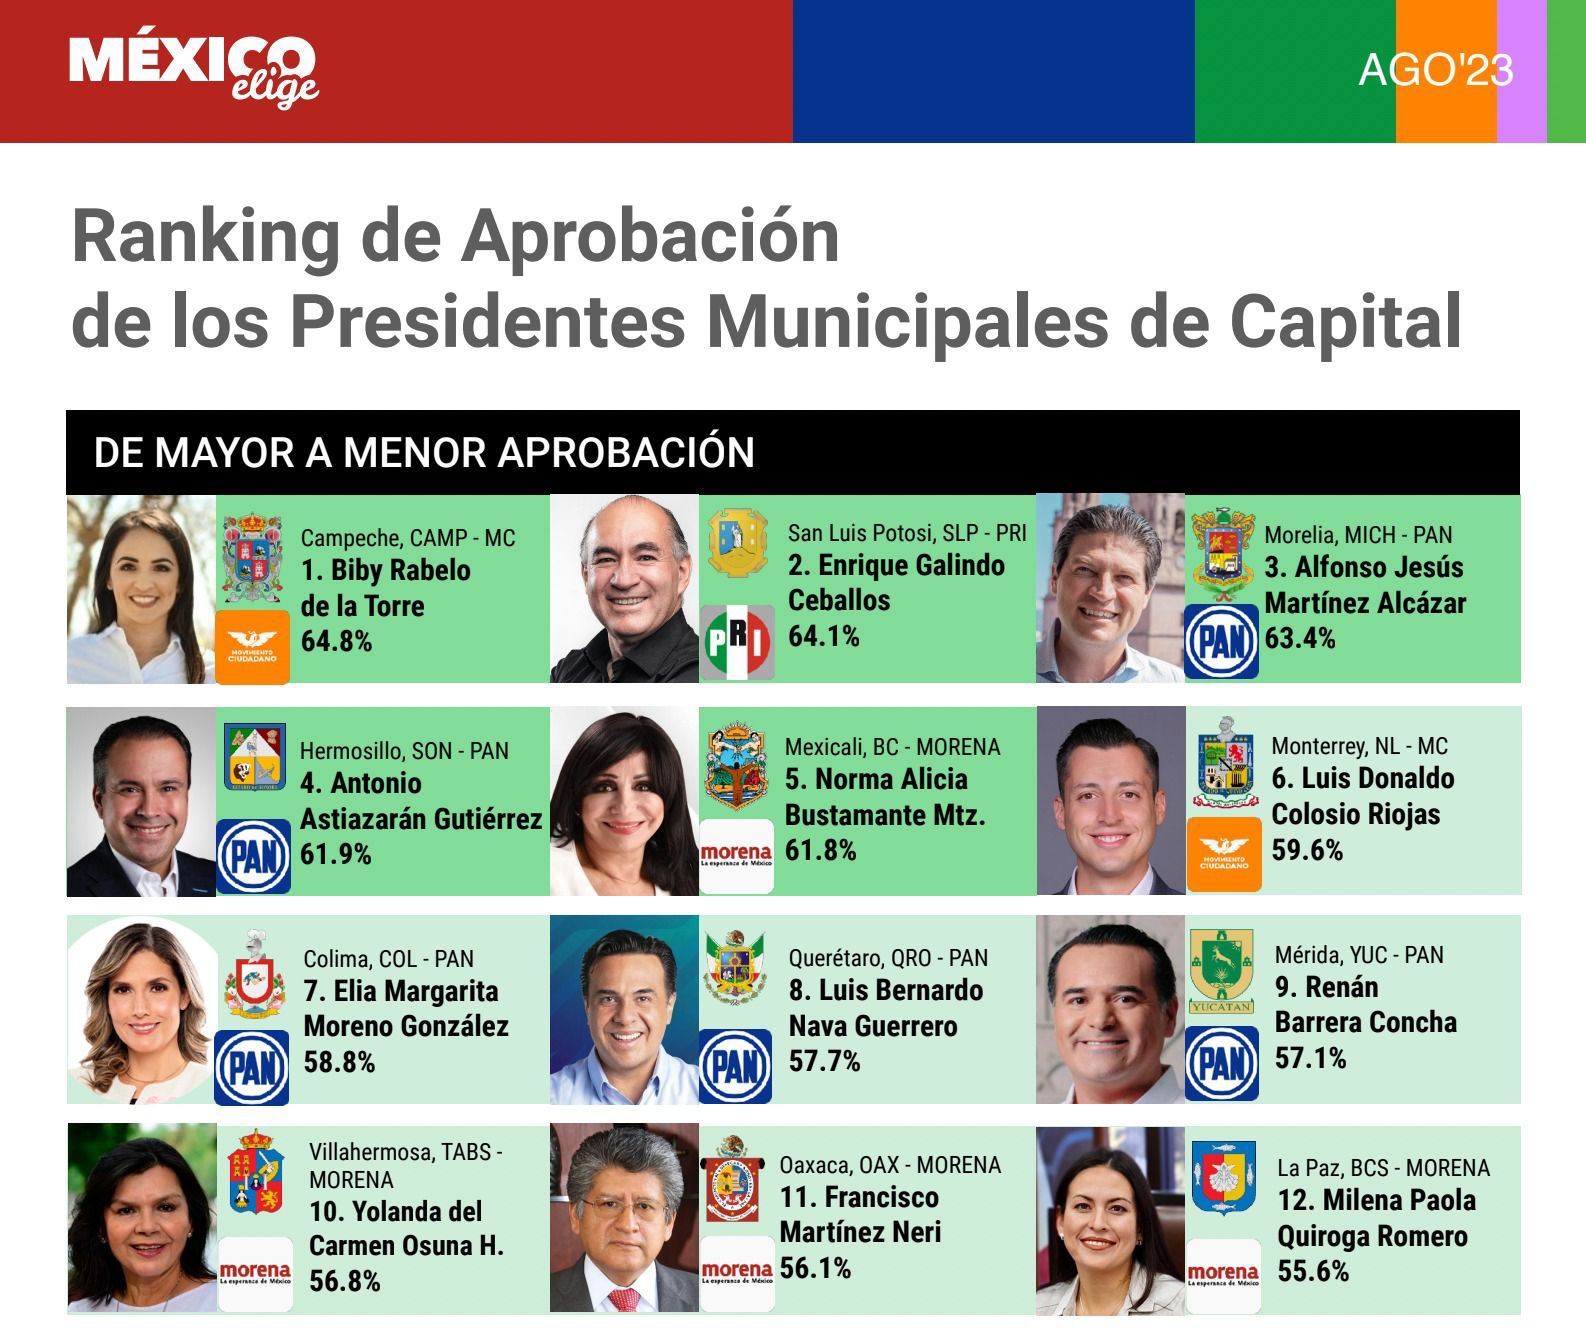 En el ranking publicado por México Elige, se ubica en segundo lugar, con 64.1 puntos de opiniones favorables.